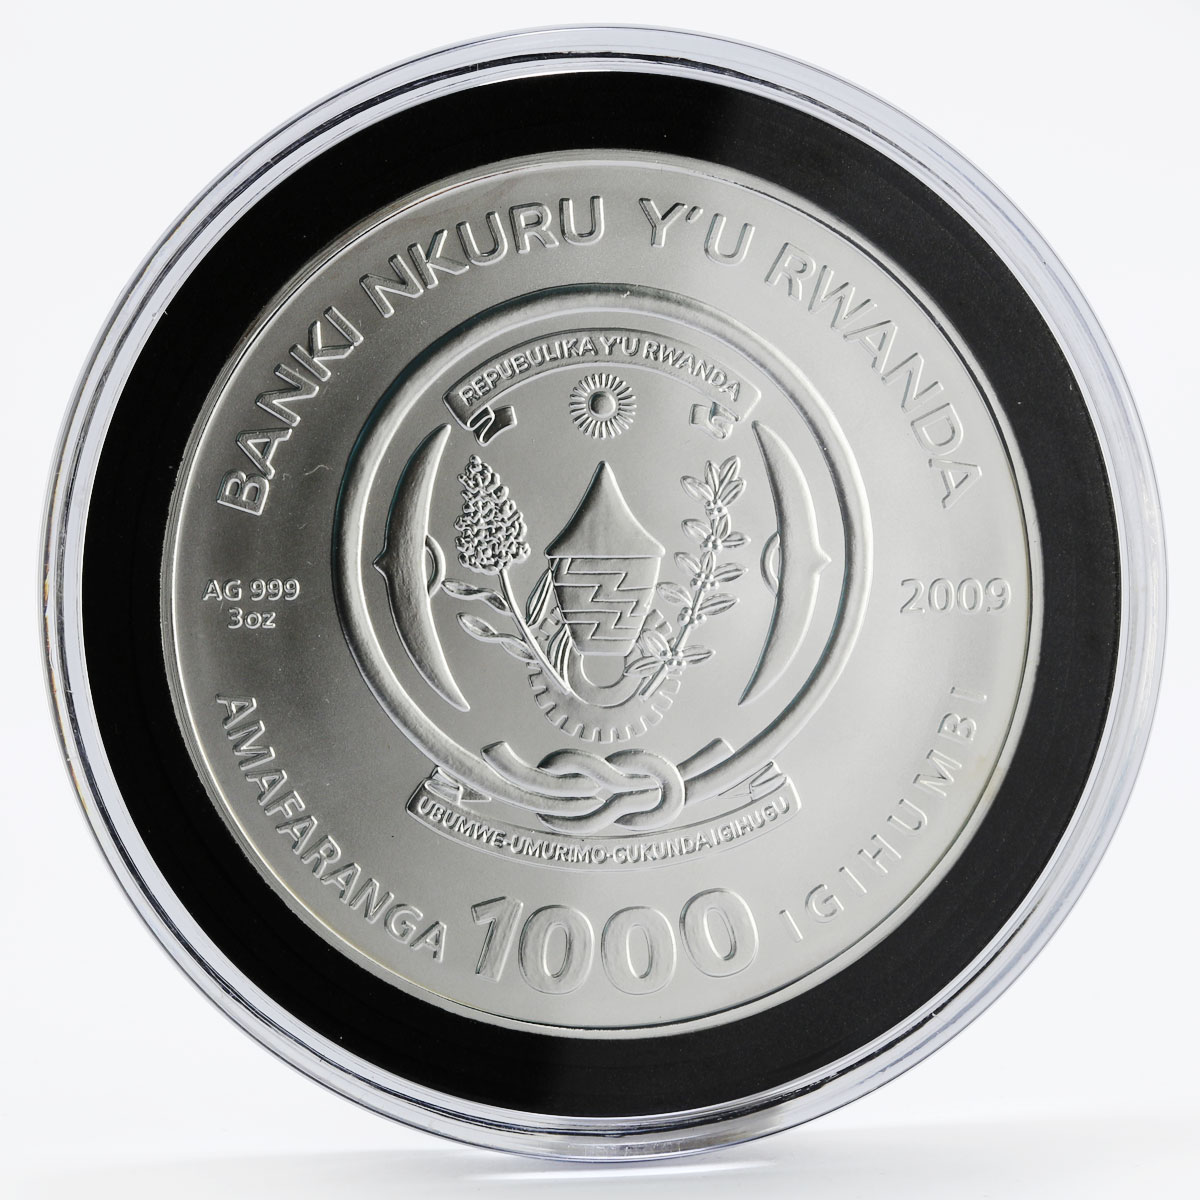 Rwanda 1000 francs Zodiac Aquarius crystal gilded silver coin 2009